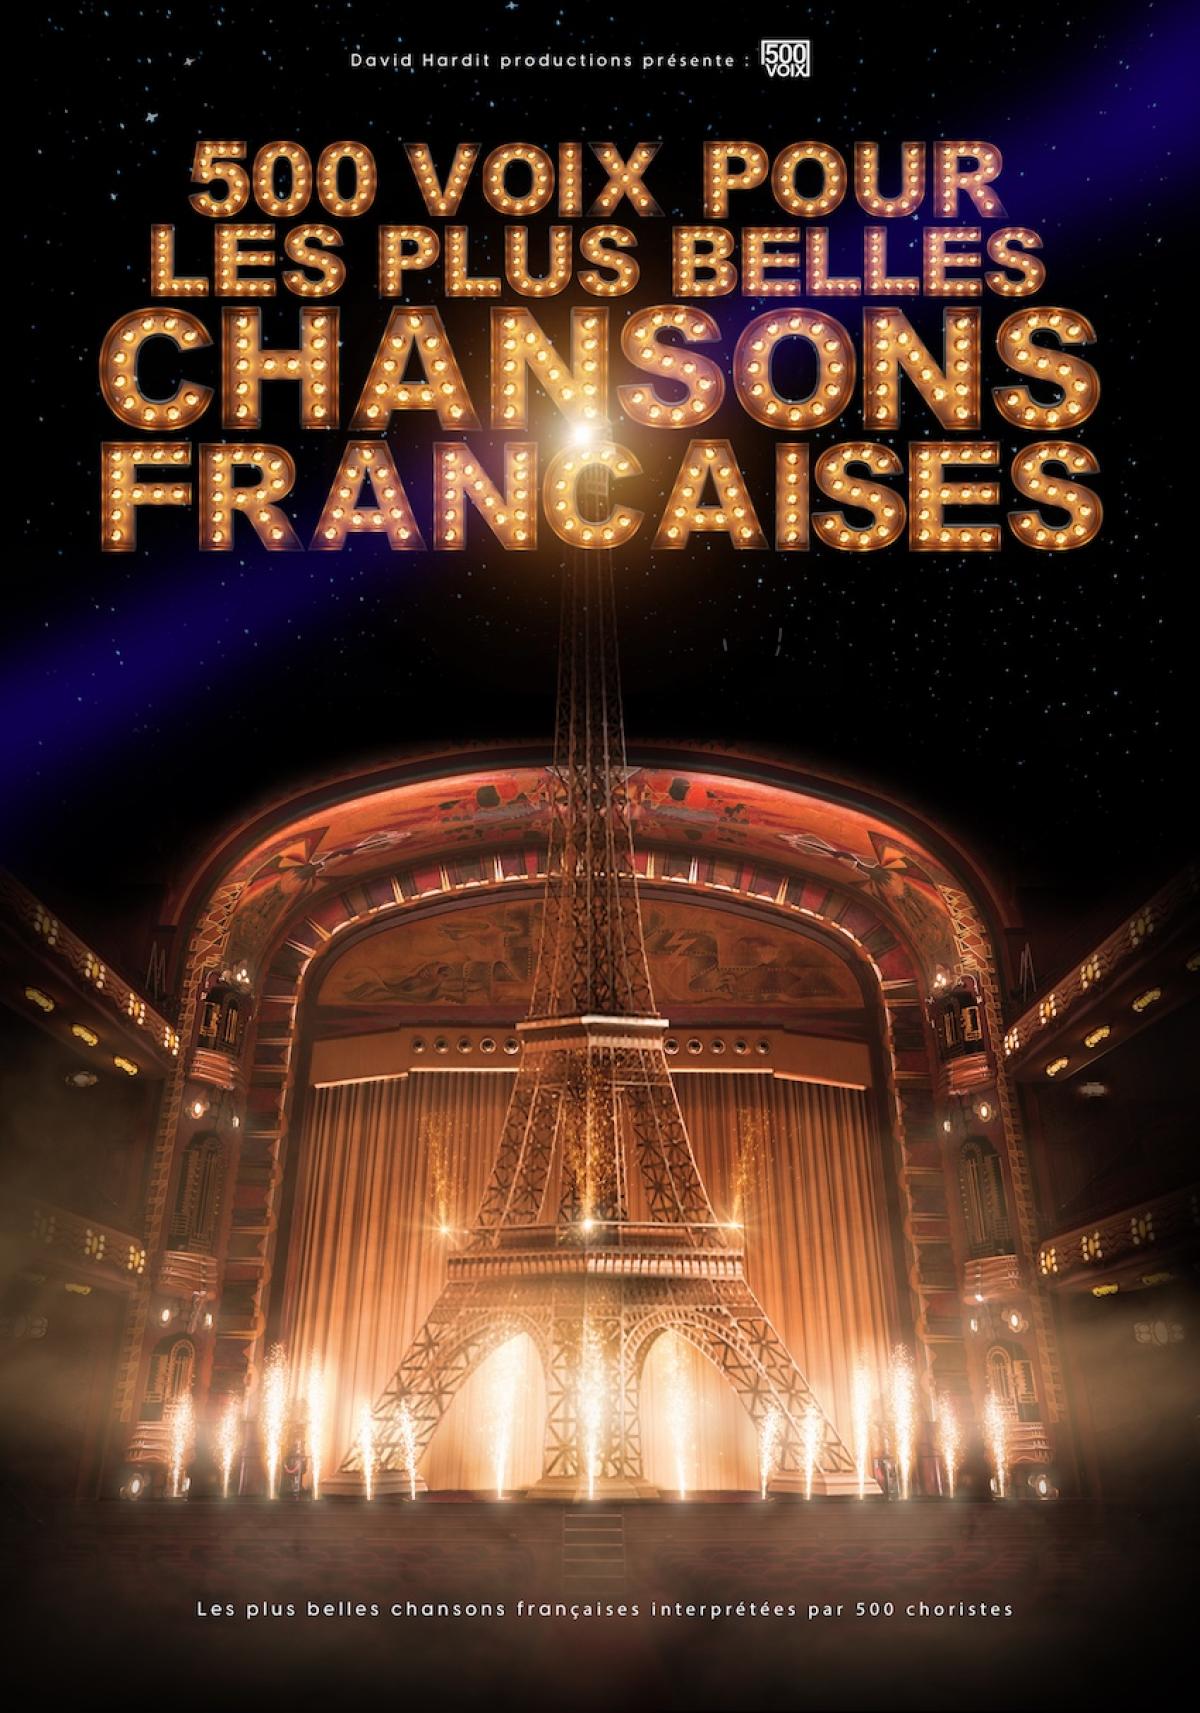 500 Voix Pour Les Plus Belles Chansons at L'amphitheatre Tickets